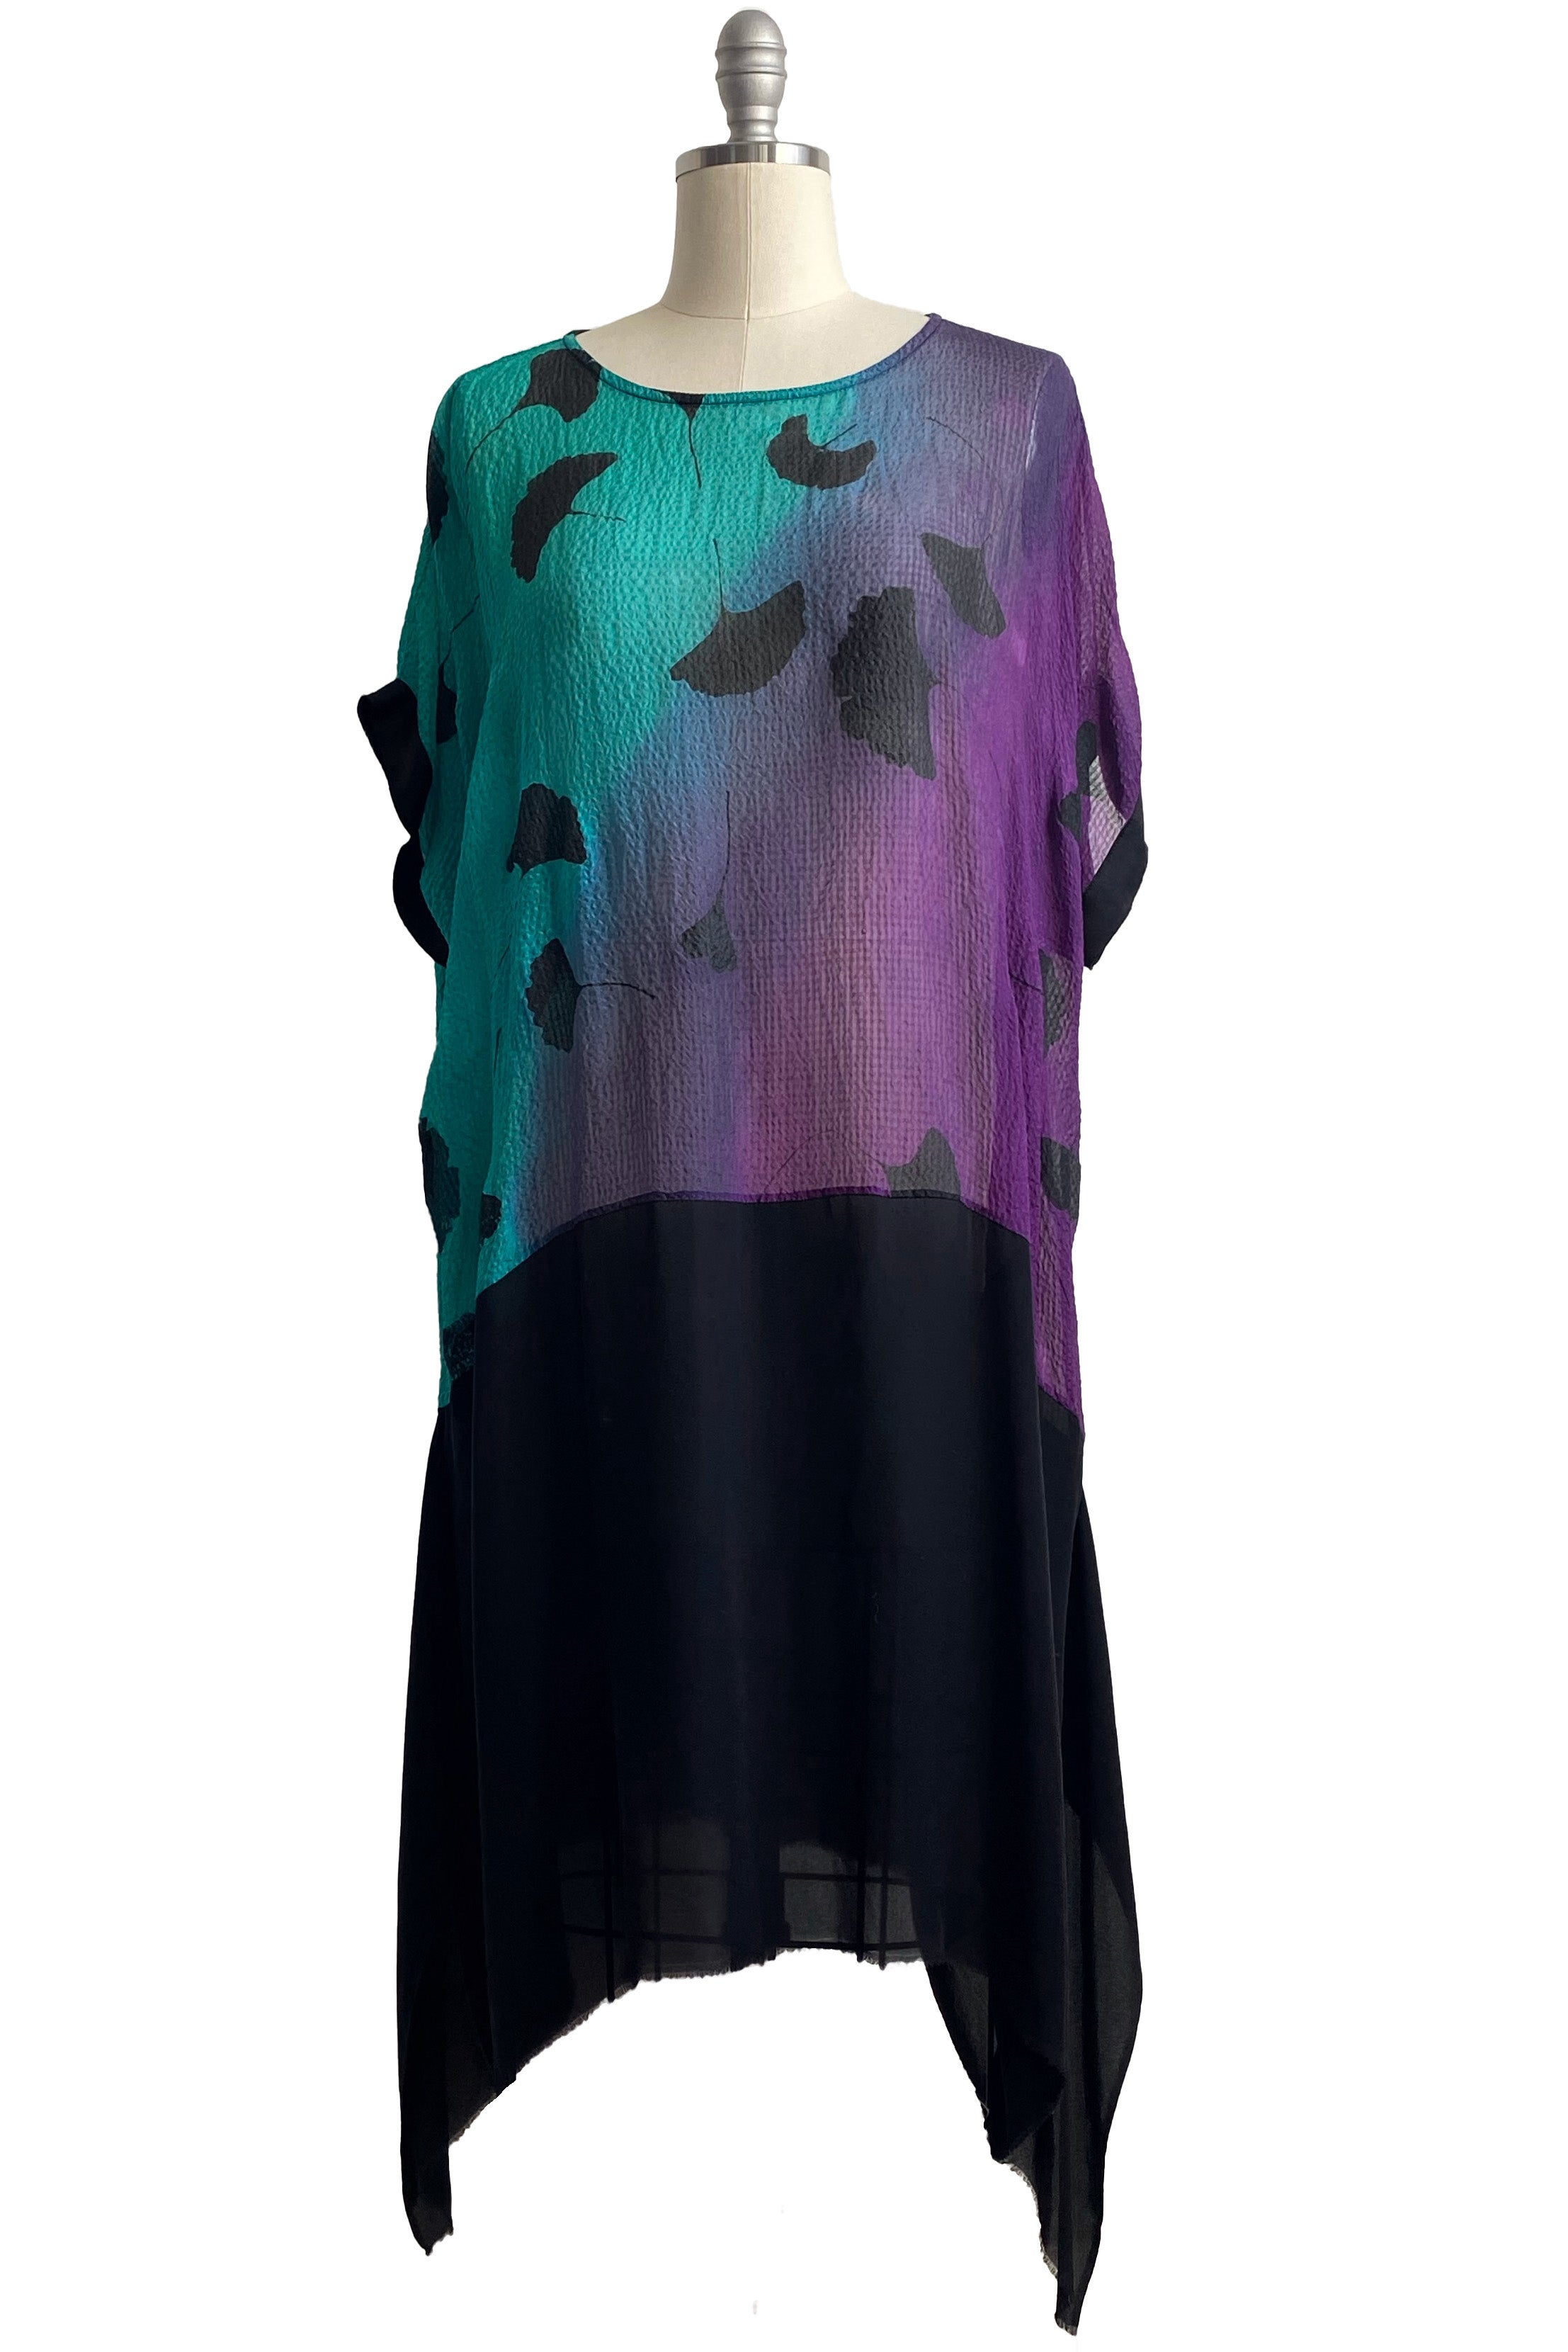 Essa Dress in Seersucker Silk w/ Ginkgo Print - Aqua, Purple & Black - Medium